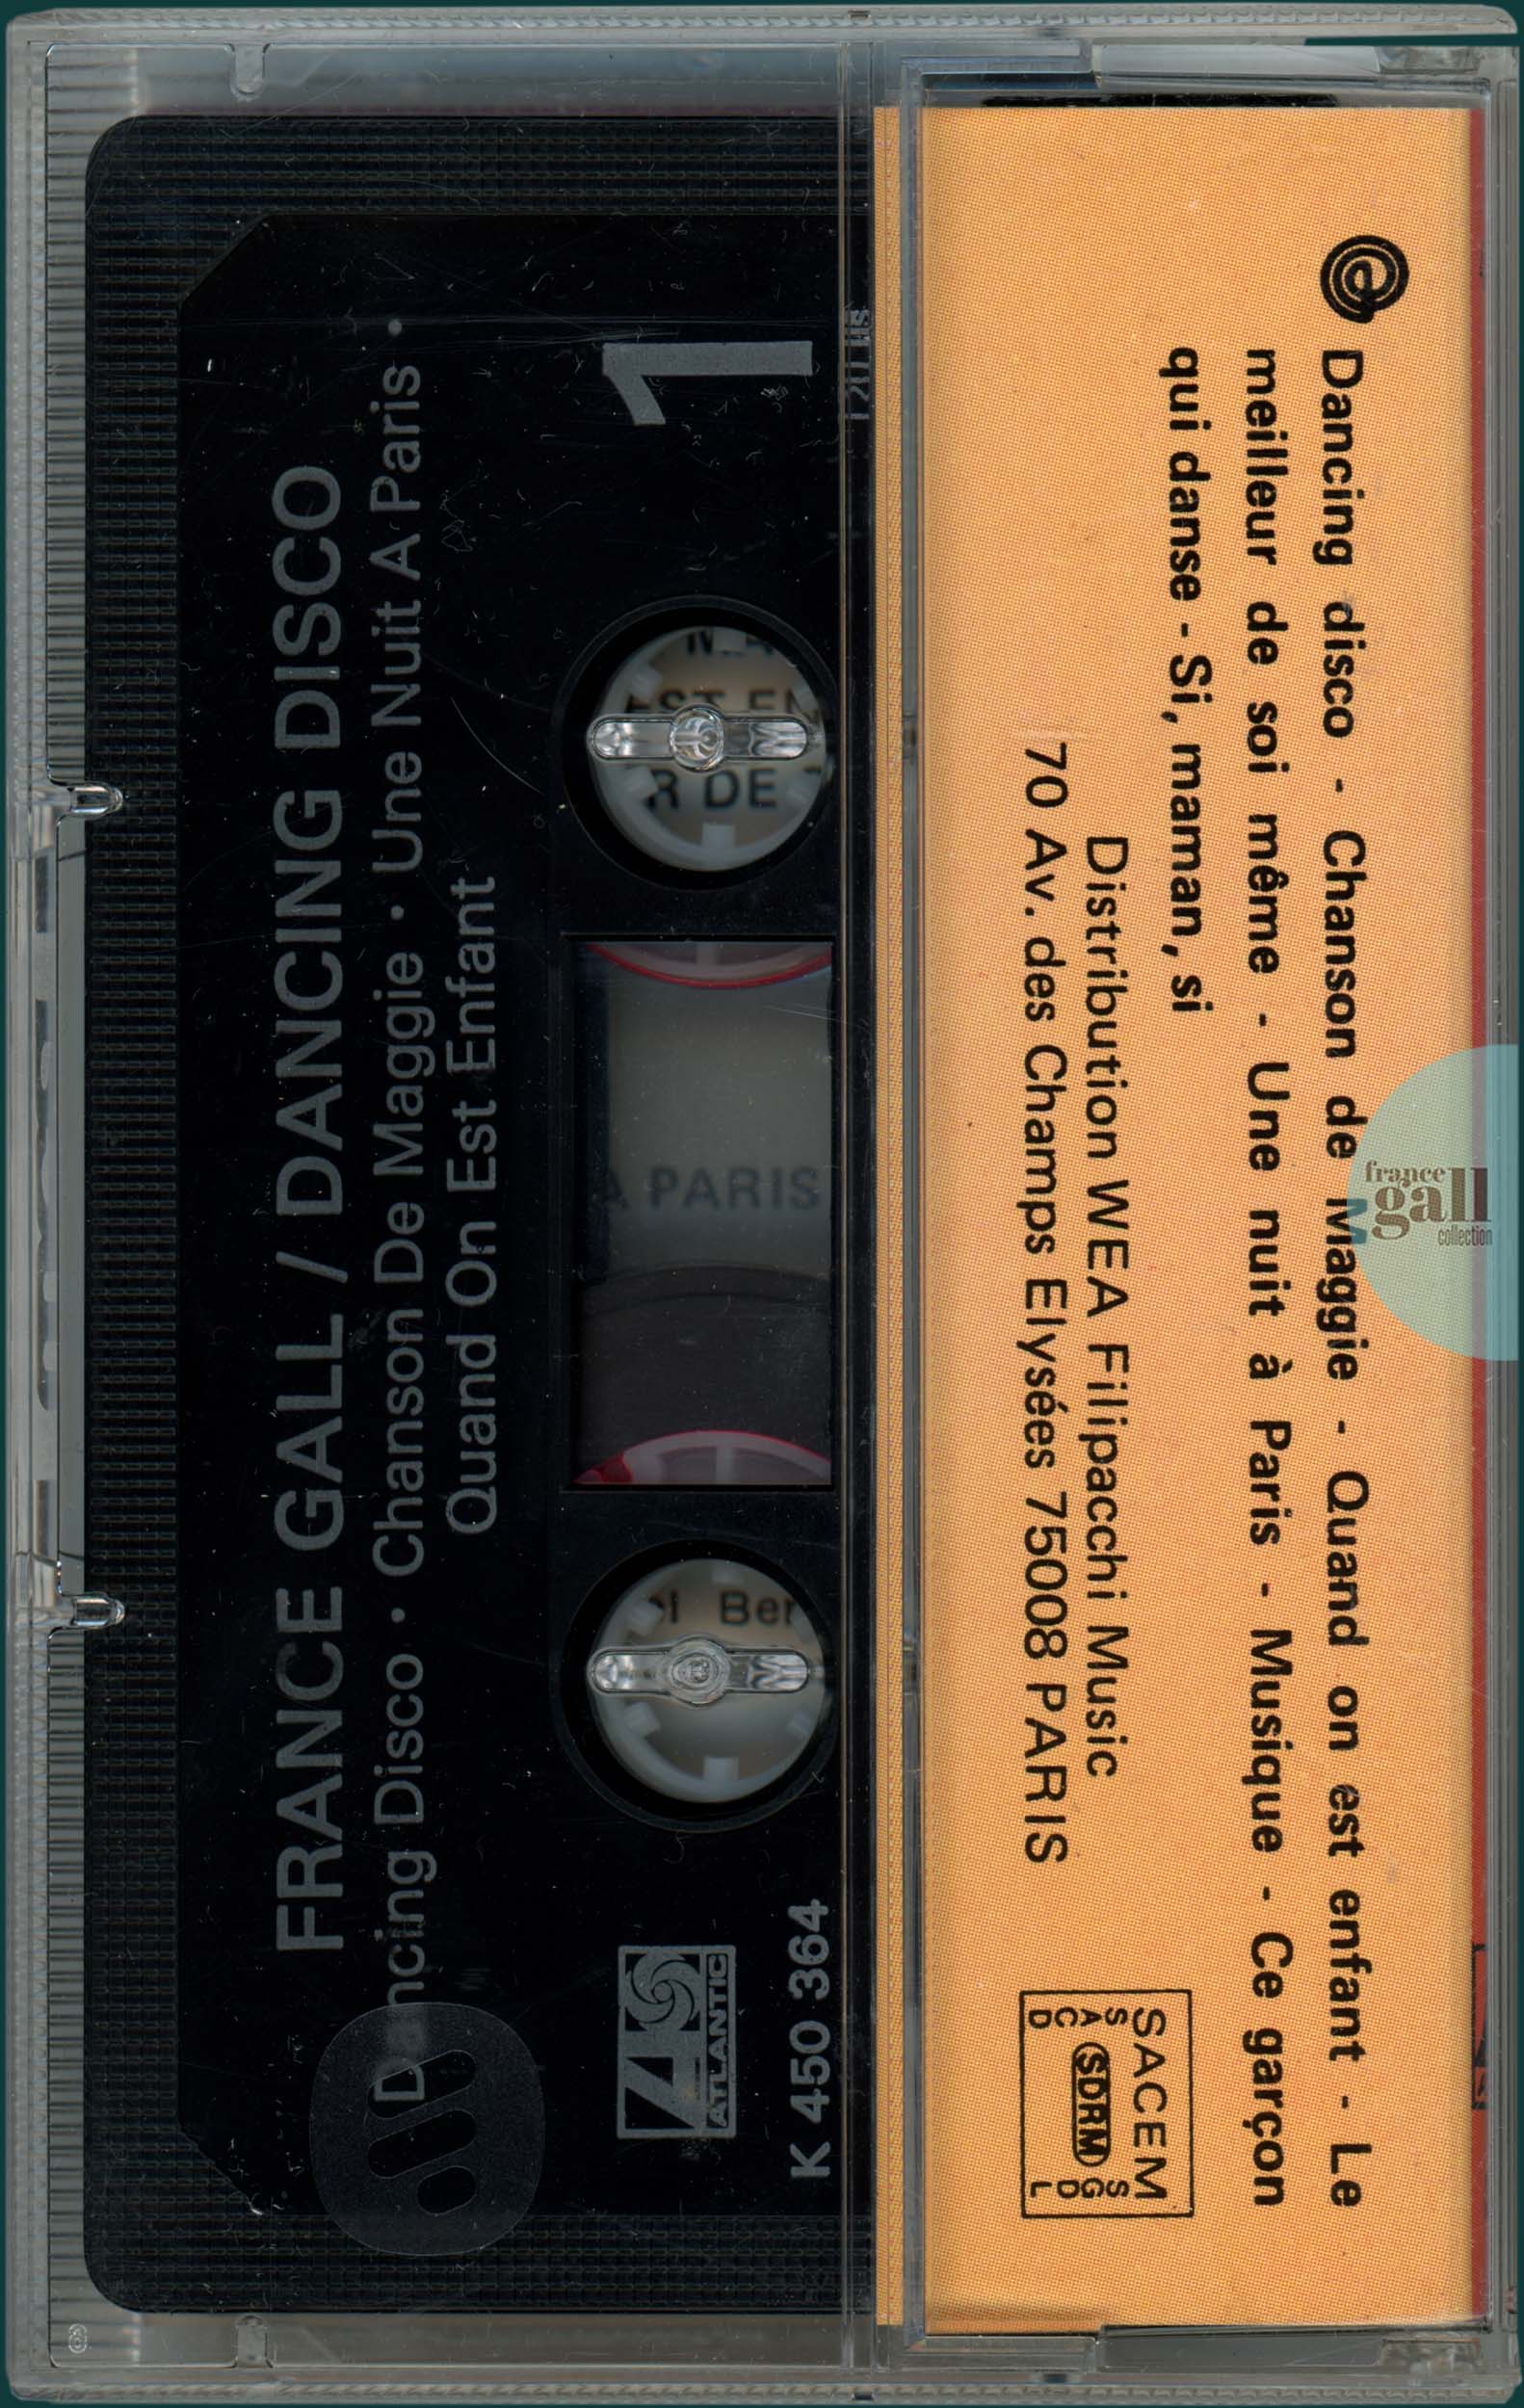 France Gall - Dancing Disco (Cassette noire réédition 1986)